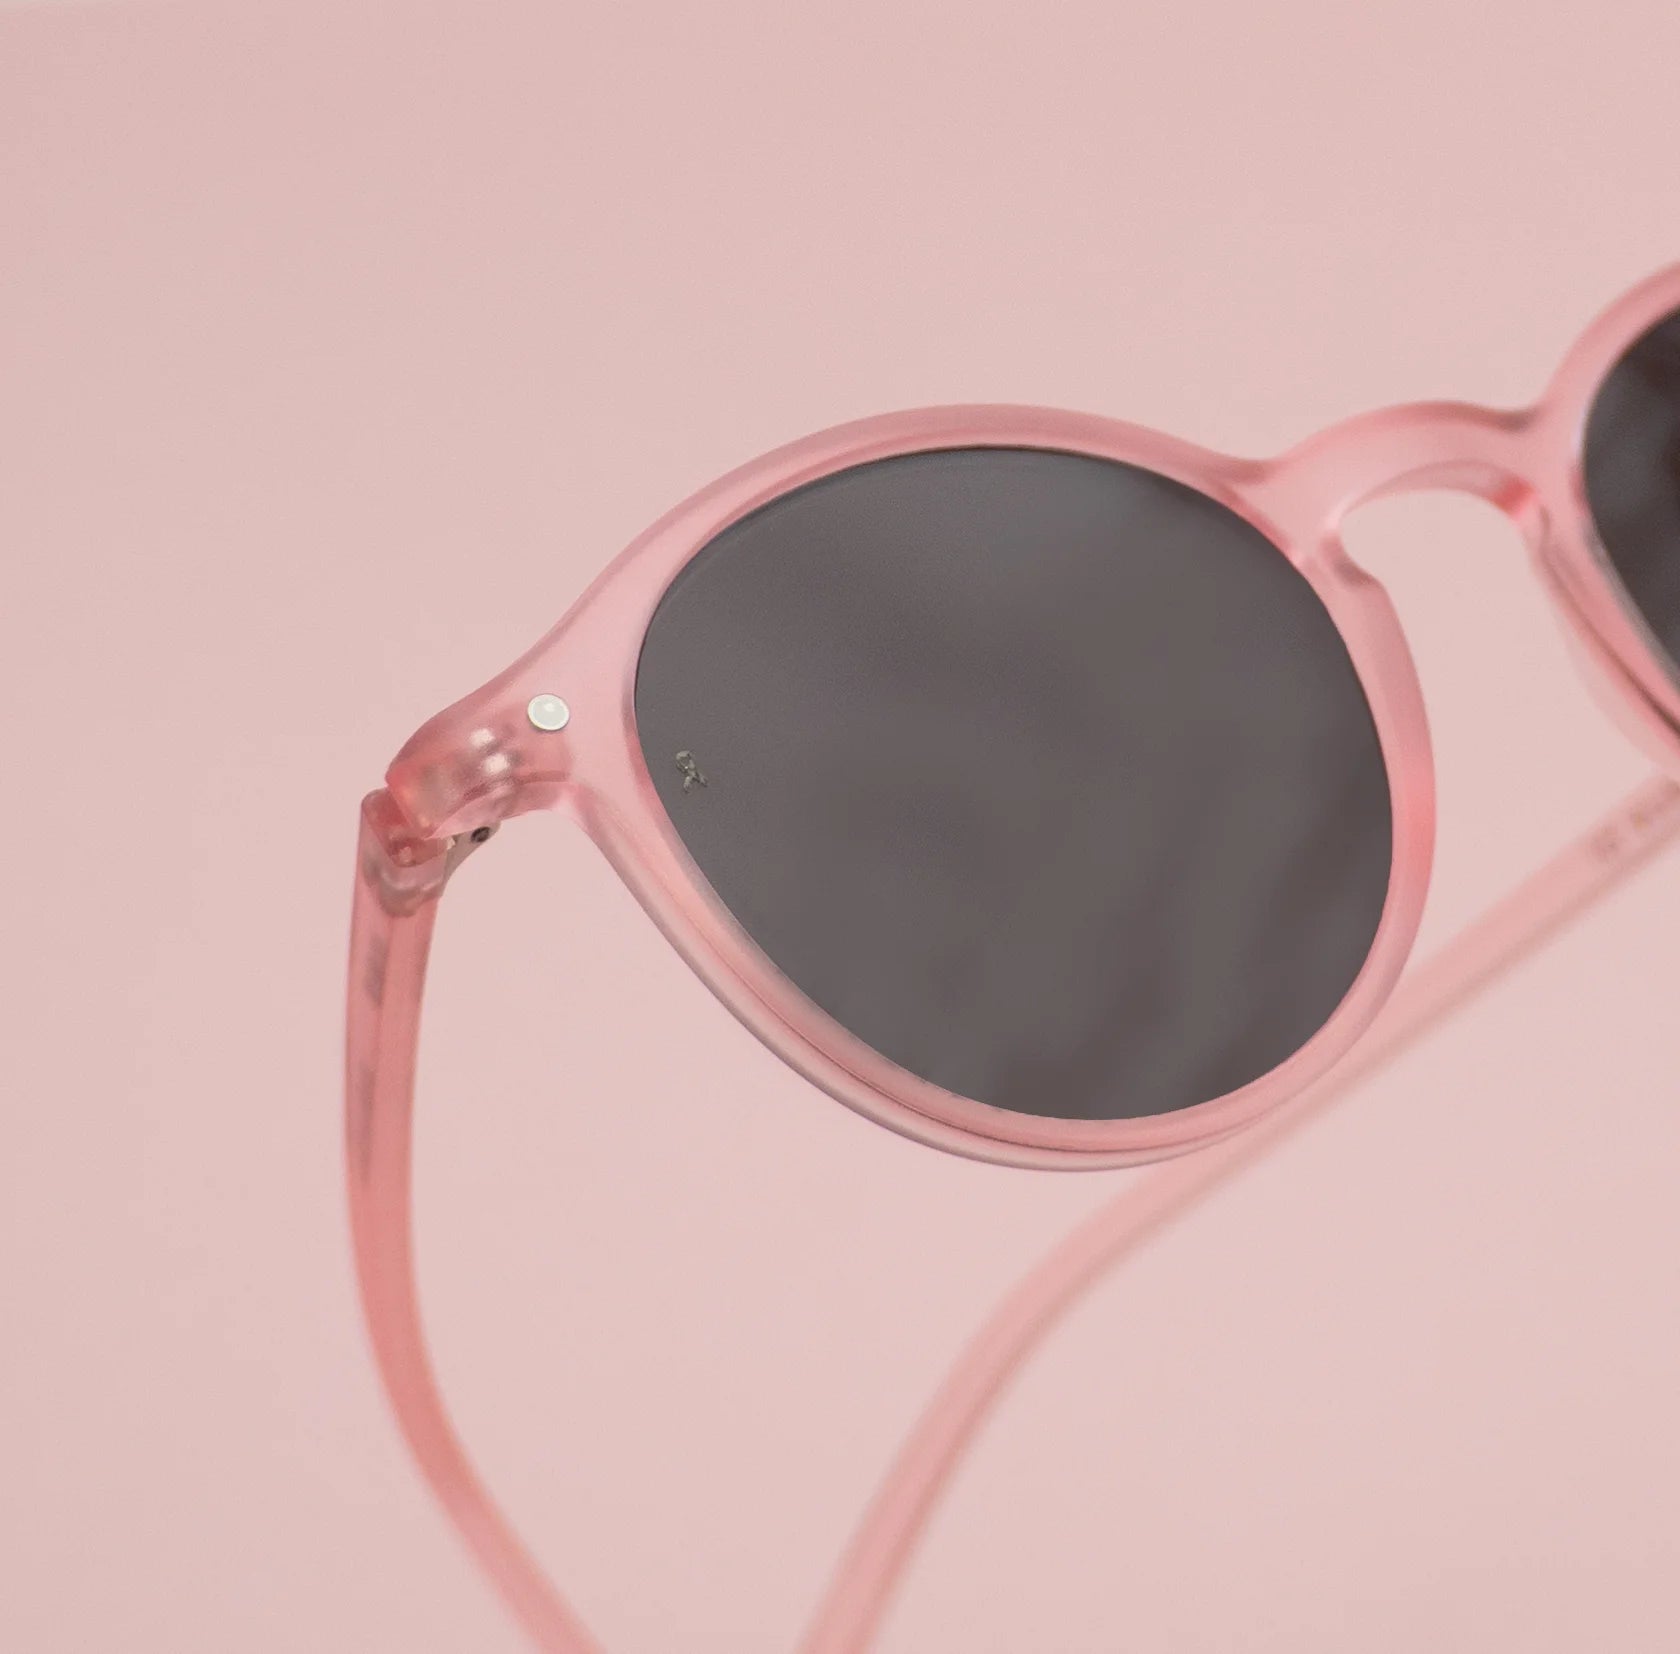 Close-up photograph of the La Vue En Rose sunglasses frame.